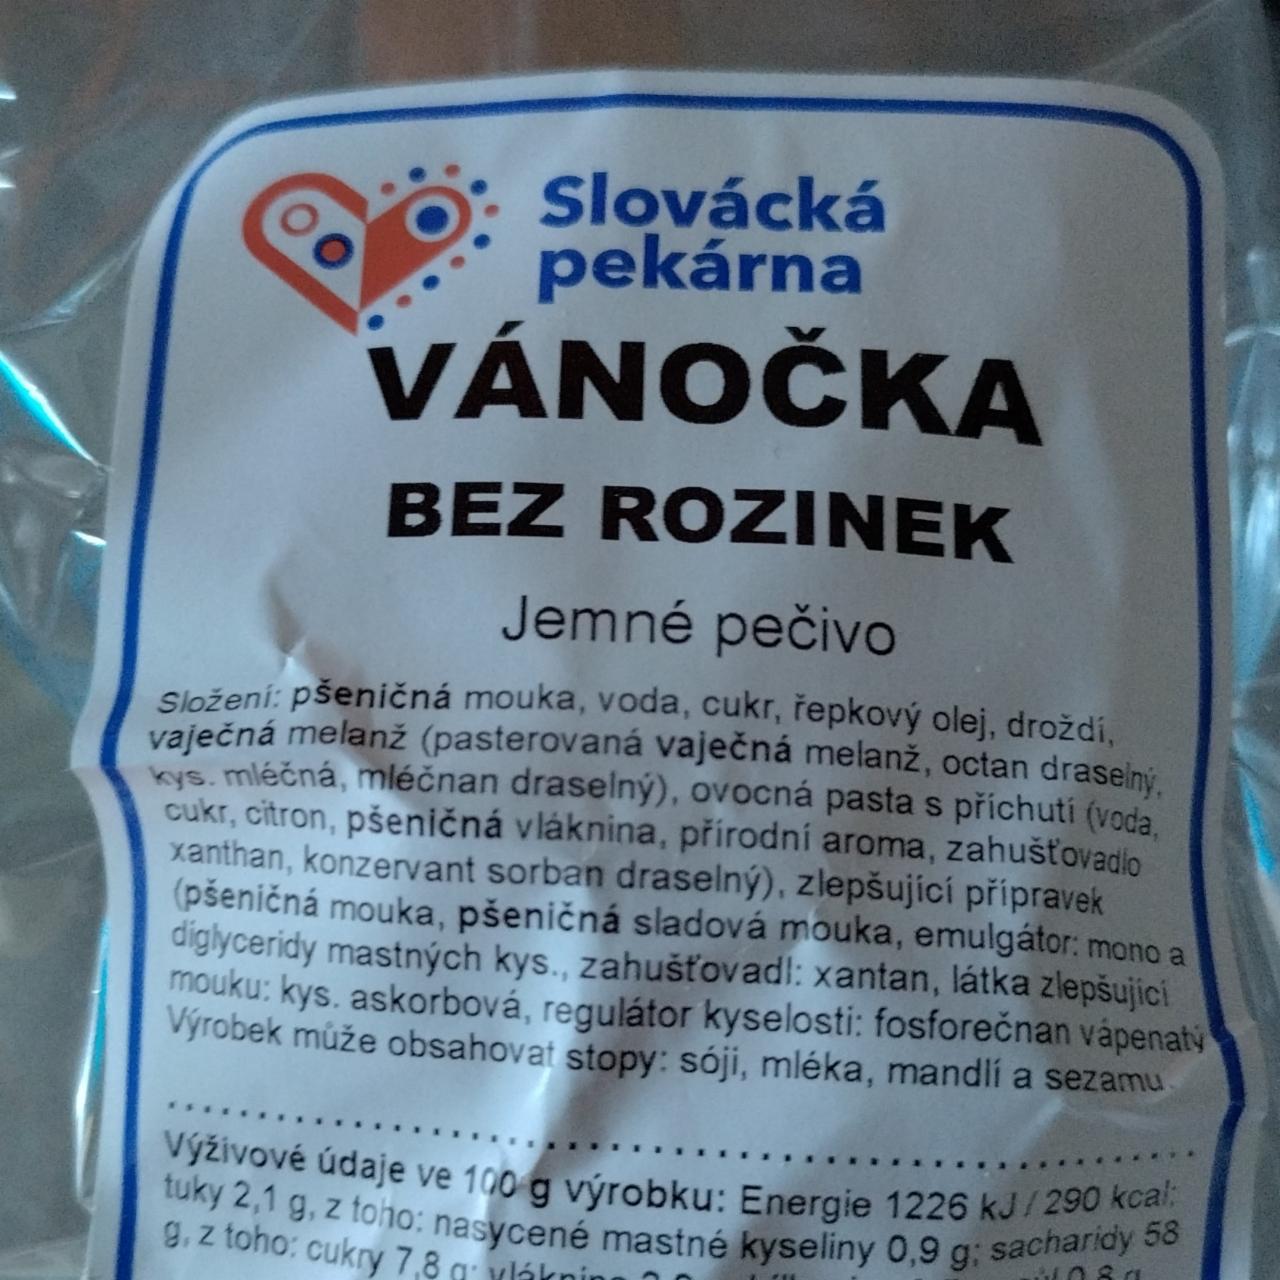 Fotografie - Vánočka bez rozinek Slovácká pekárna